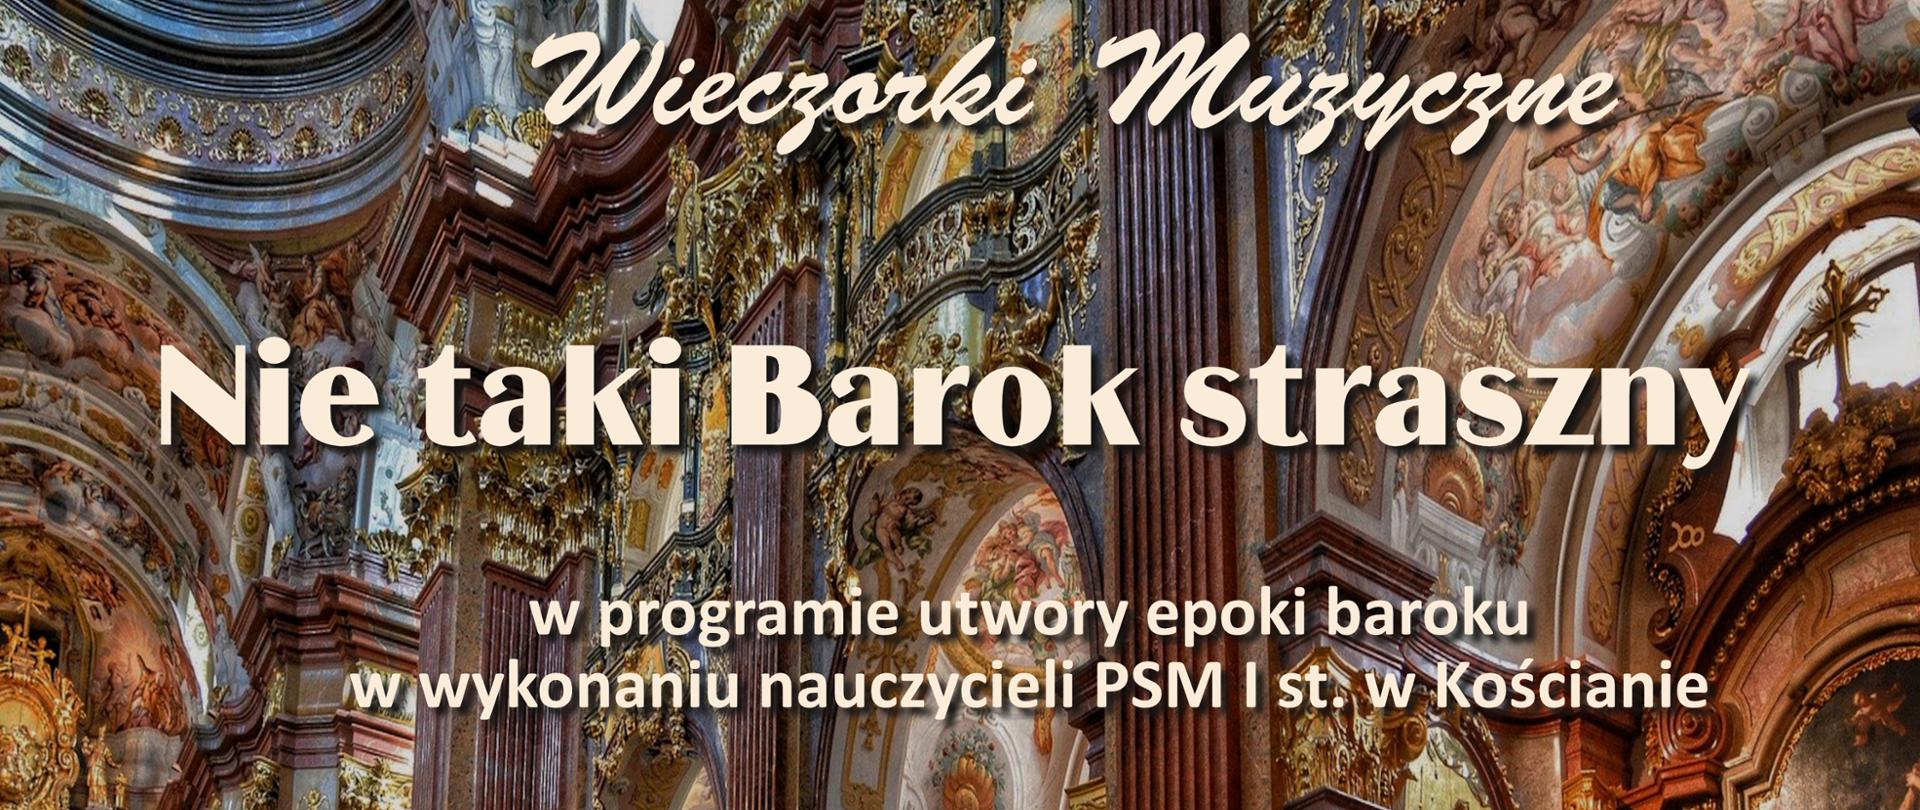 plakat koncertu z cyklu "Wieczorki muzyczne" - Nie taki Barok straszny - na tle barokowego wnętrza kościoła